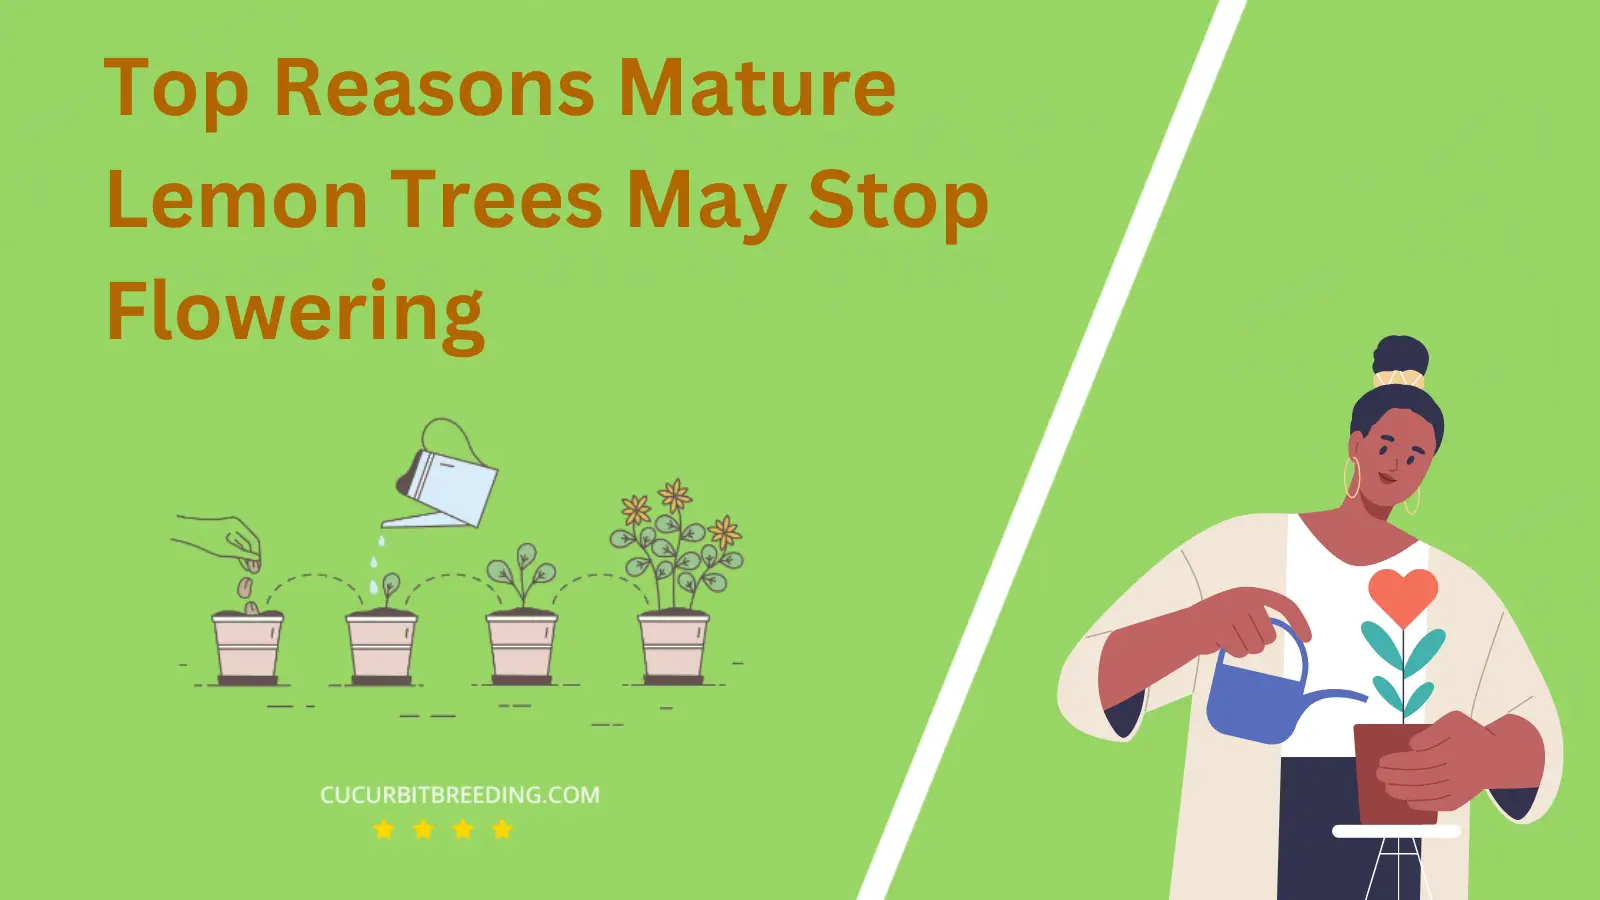 Top Reasons Mature Lemon Trees May Stop Flowering